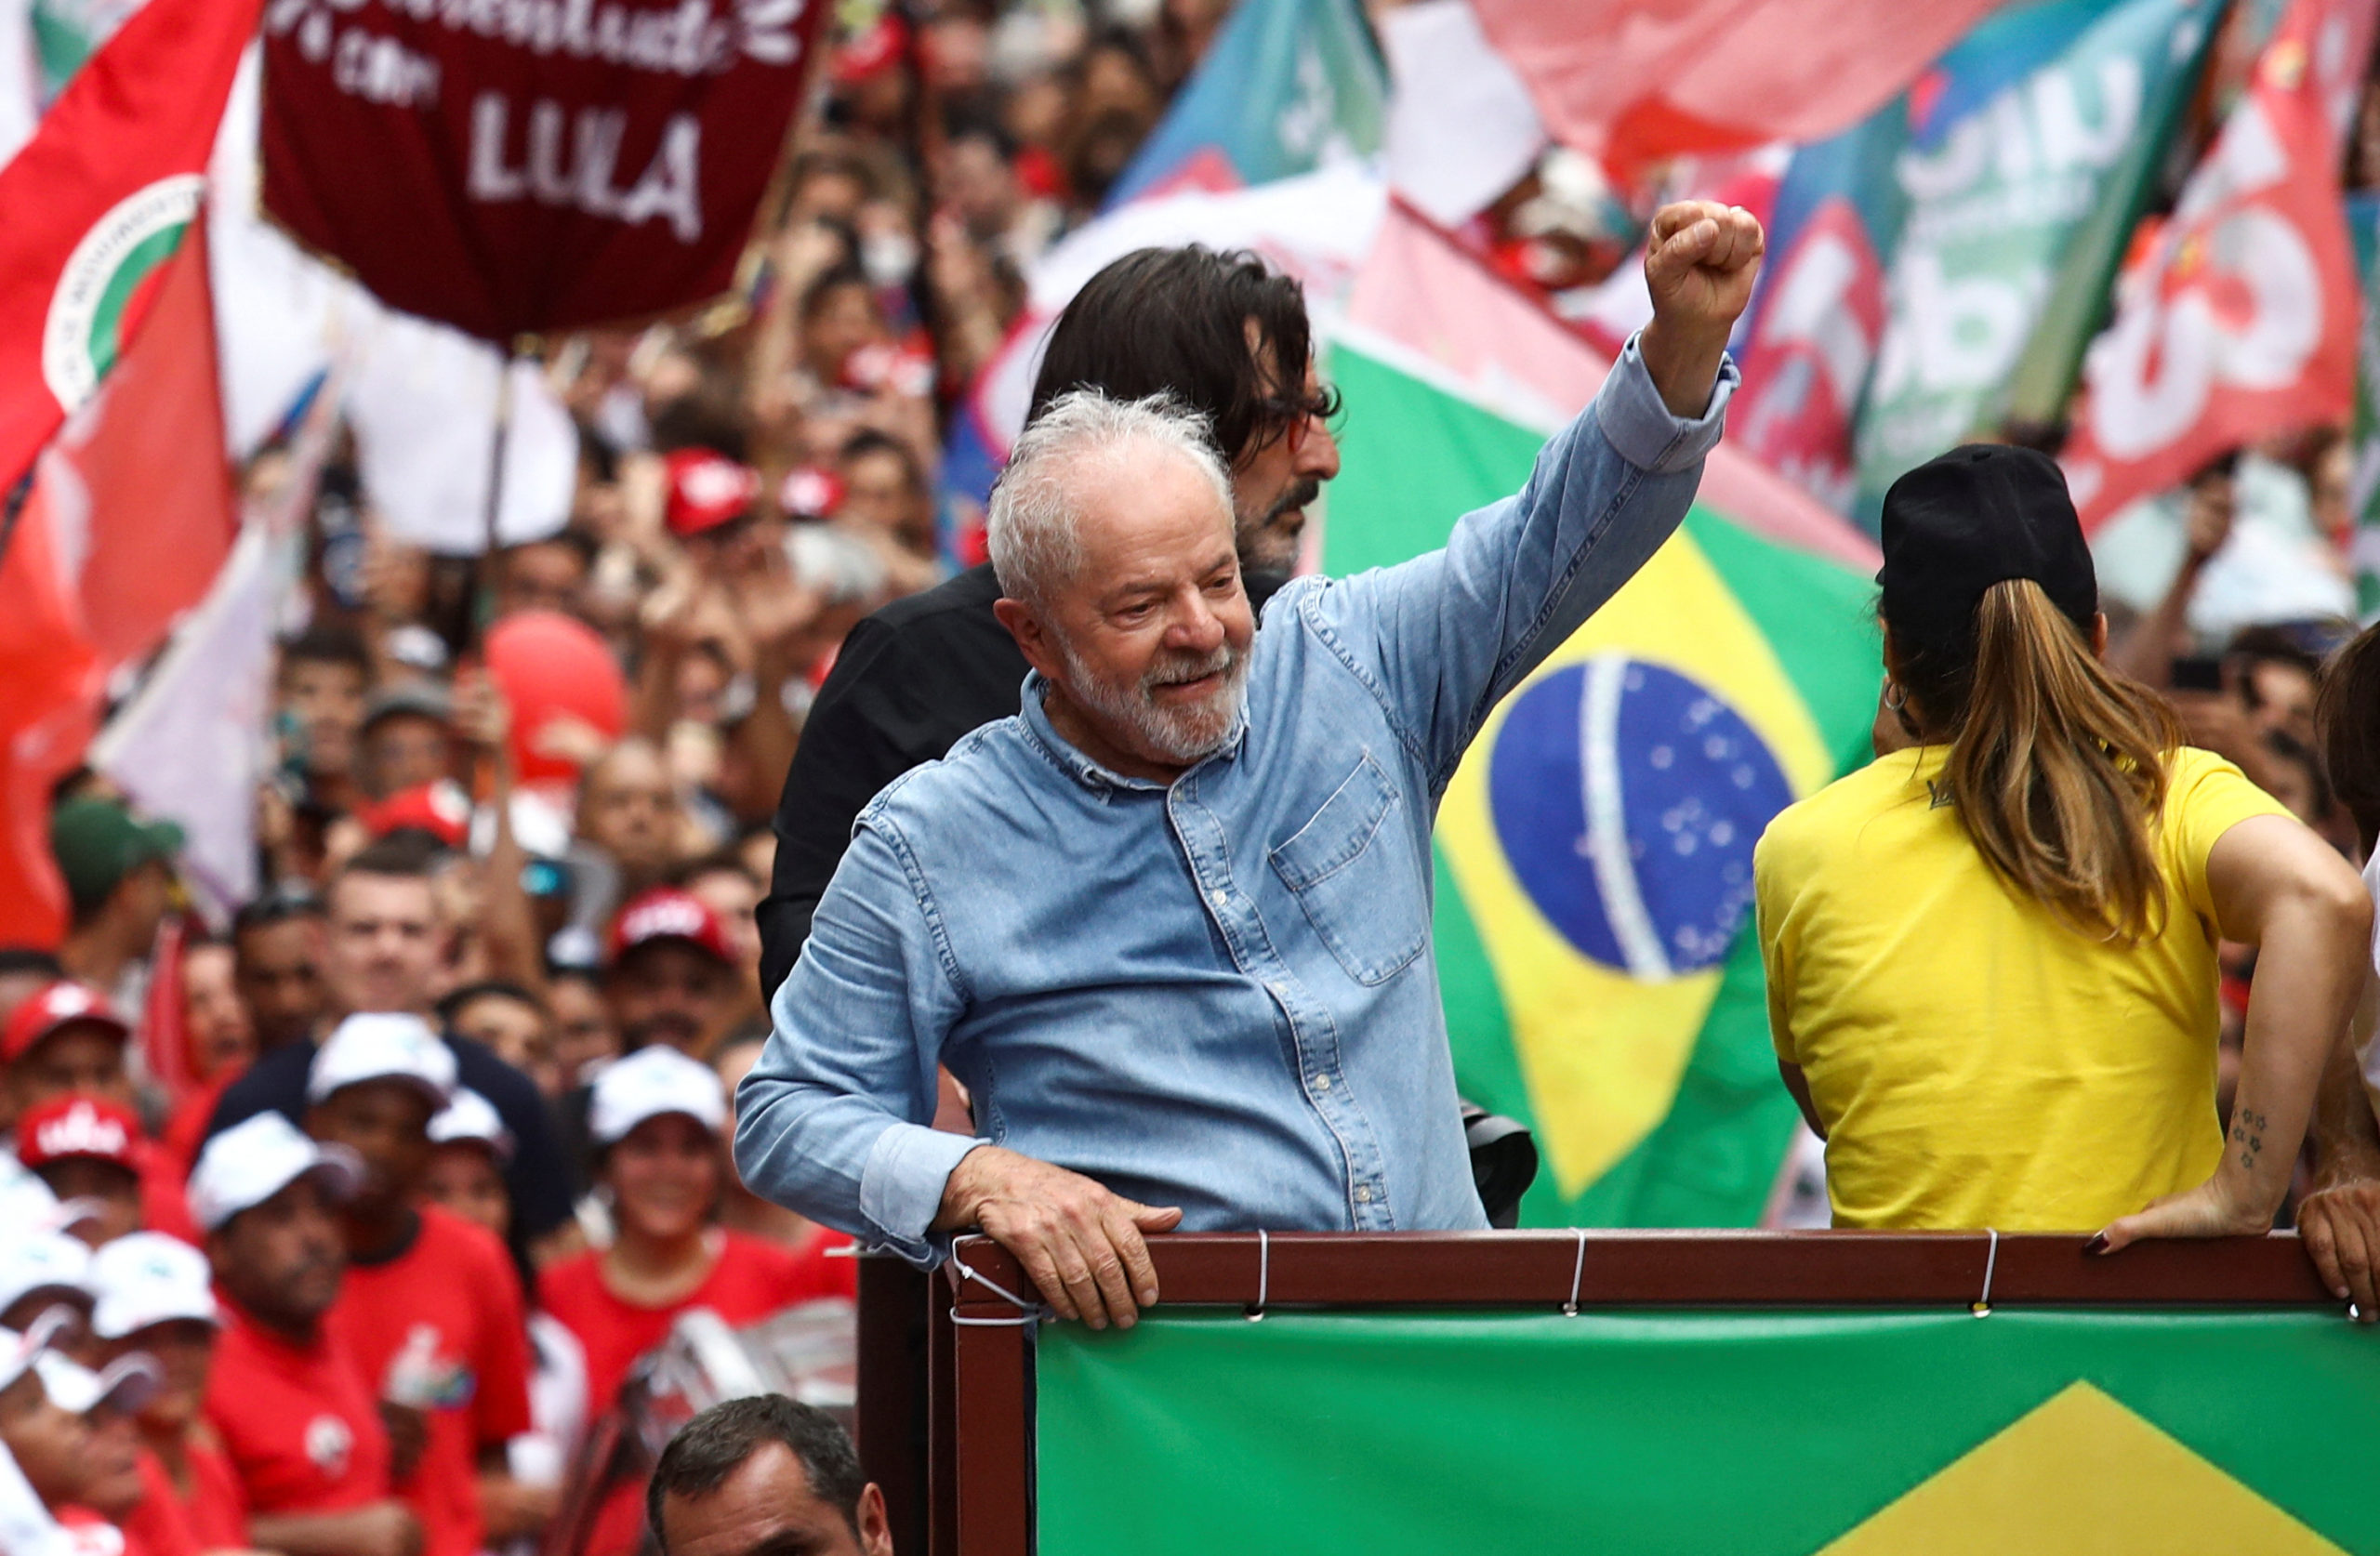 Lula asume su tercer mandato como presidente de Brasil: “Prometo defender la Constitución y sustentar la unión del país”